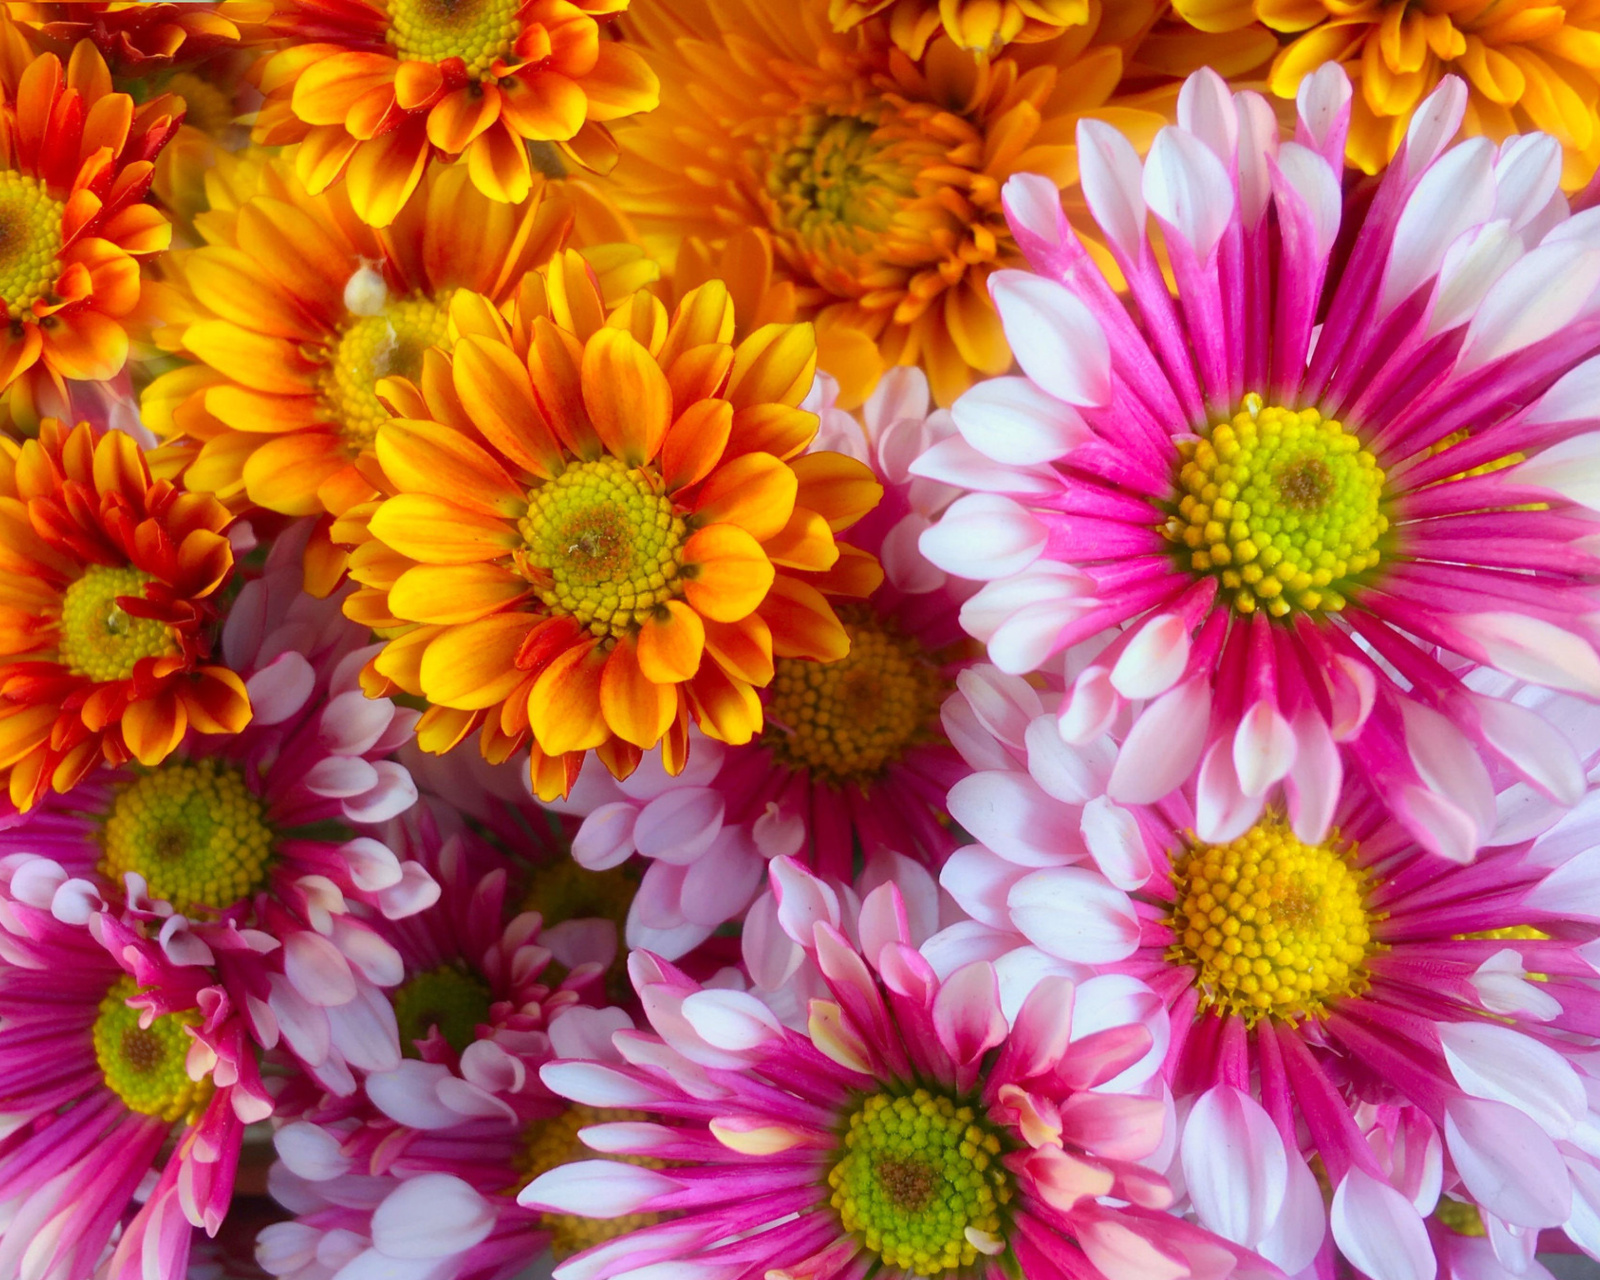 Chrysanthemum bouquet screenshot #1 1600x1280